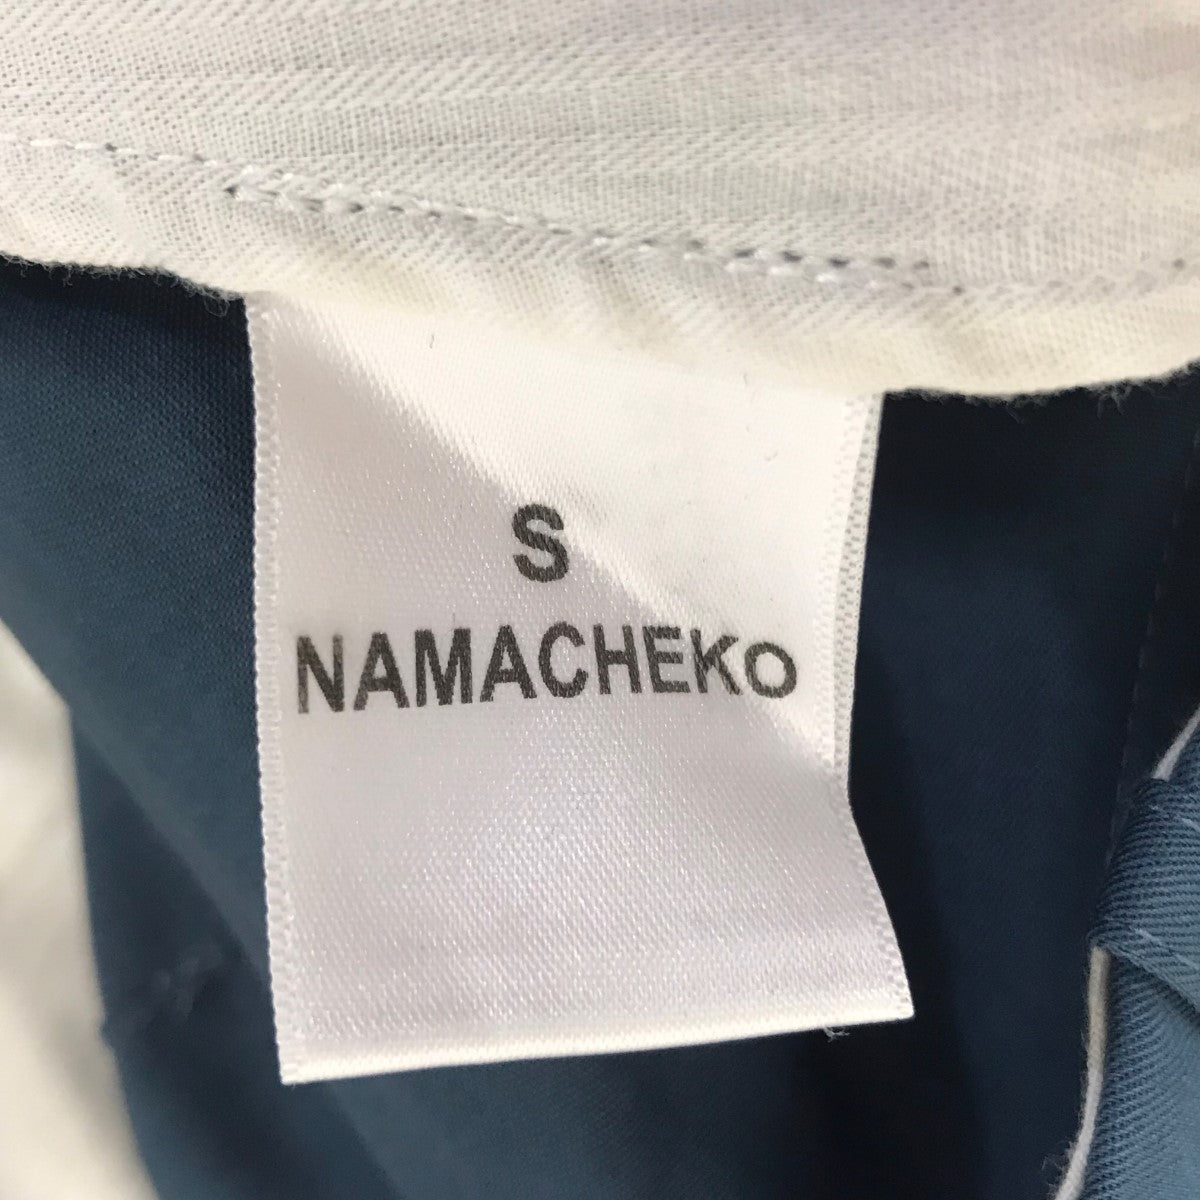 NAMACHEKO(ナマチェコ) ショートパンツ